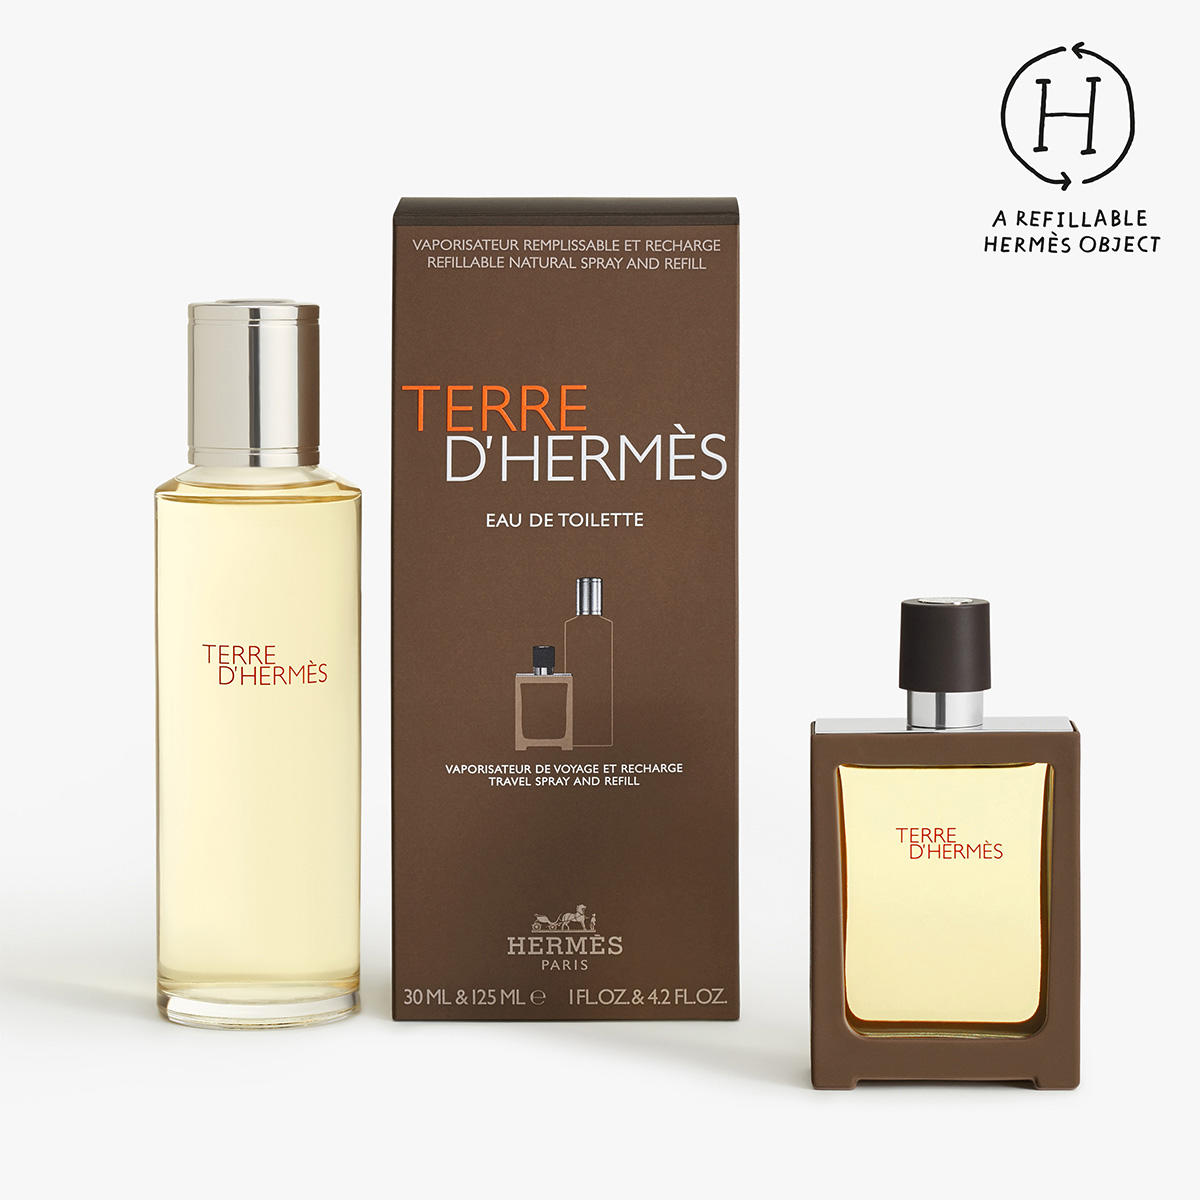 HERMÈS Terre d’Hermès Eau de Toilette Travel + Refill 30 ml + 125 ml - 2